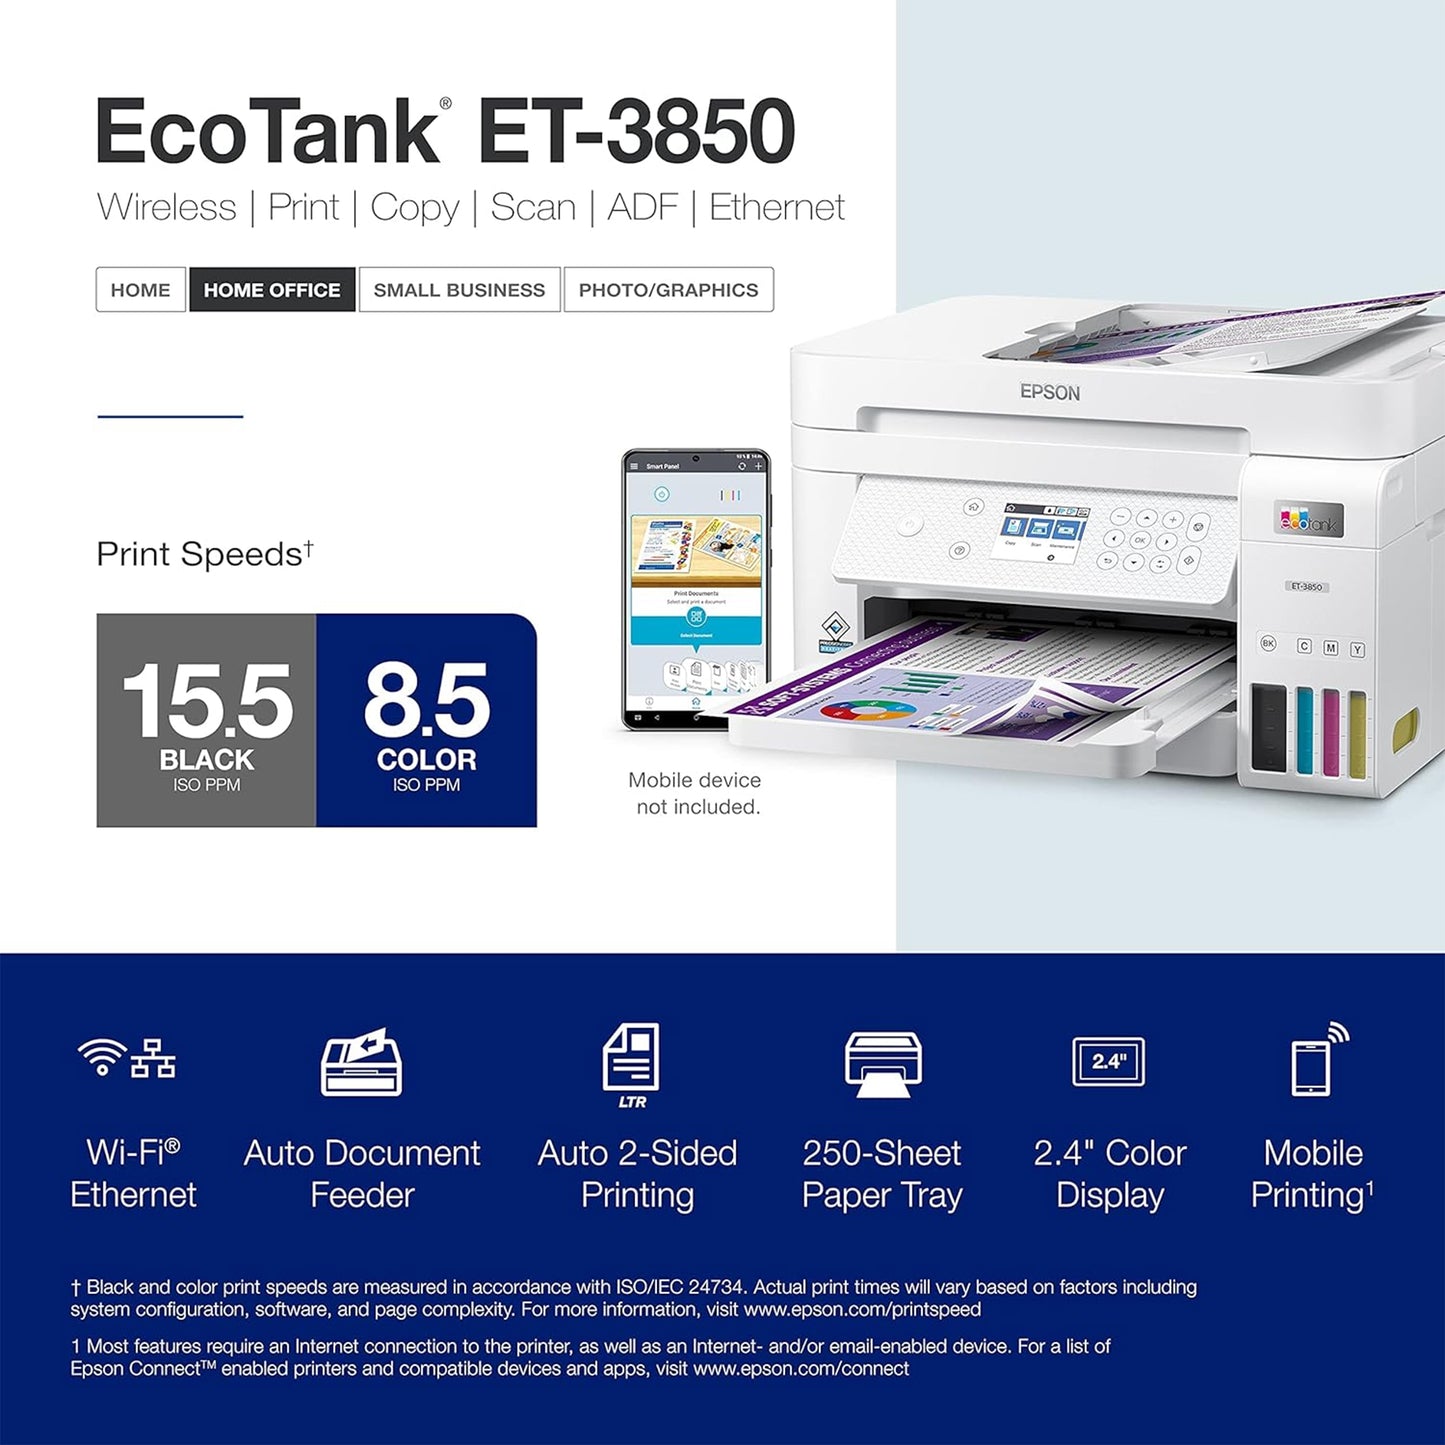 طابعة Epson EcoTank ET-3850 اللاسلكية الملونة الكل في واحد Supertank خالية من الخراطيش مع ماسح ضوئي وناسخة ووحدة تغذية المستندات التلقائية وإيثرنت - بيضاء (متجددة) 